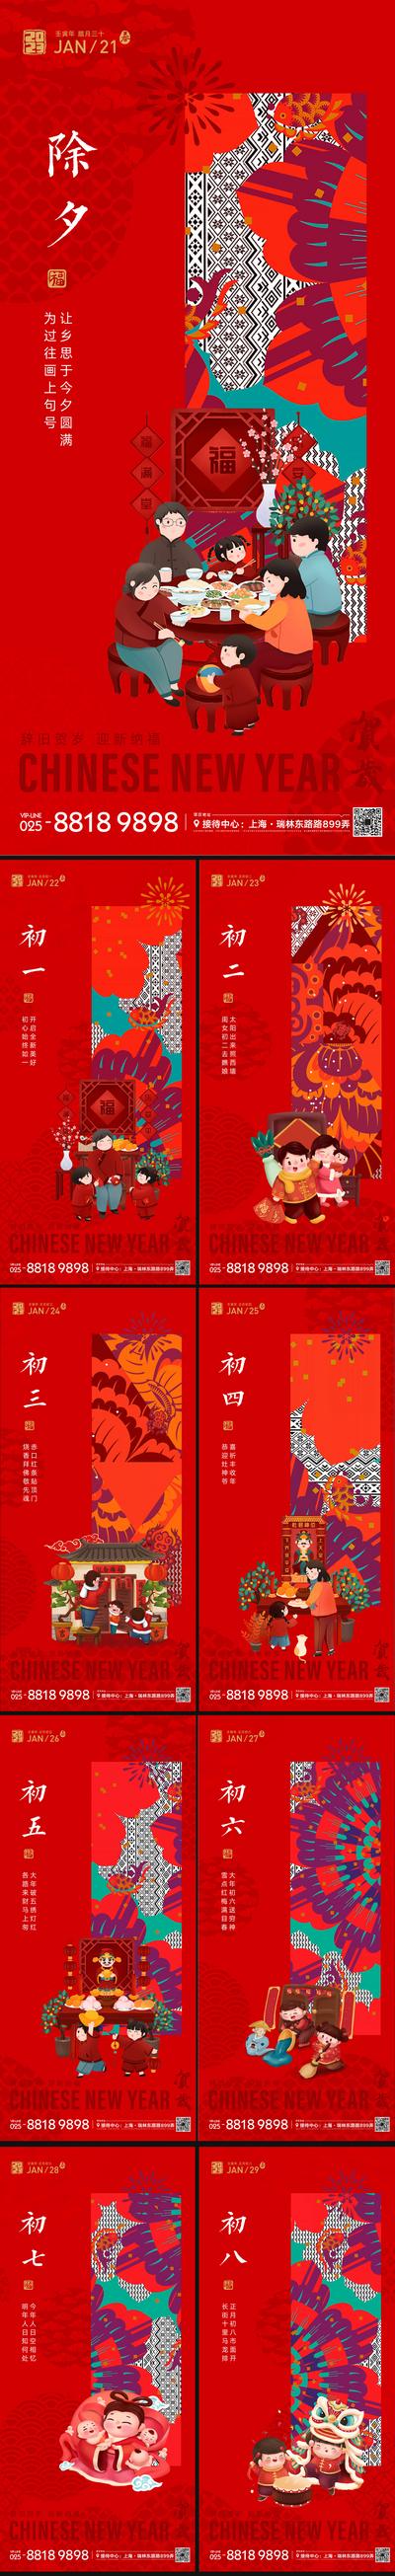 【南门网】海报 中国传统节日  新年 新春  除夕  灯笼 团圆 插画  系列